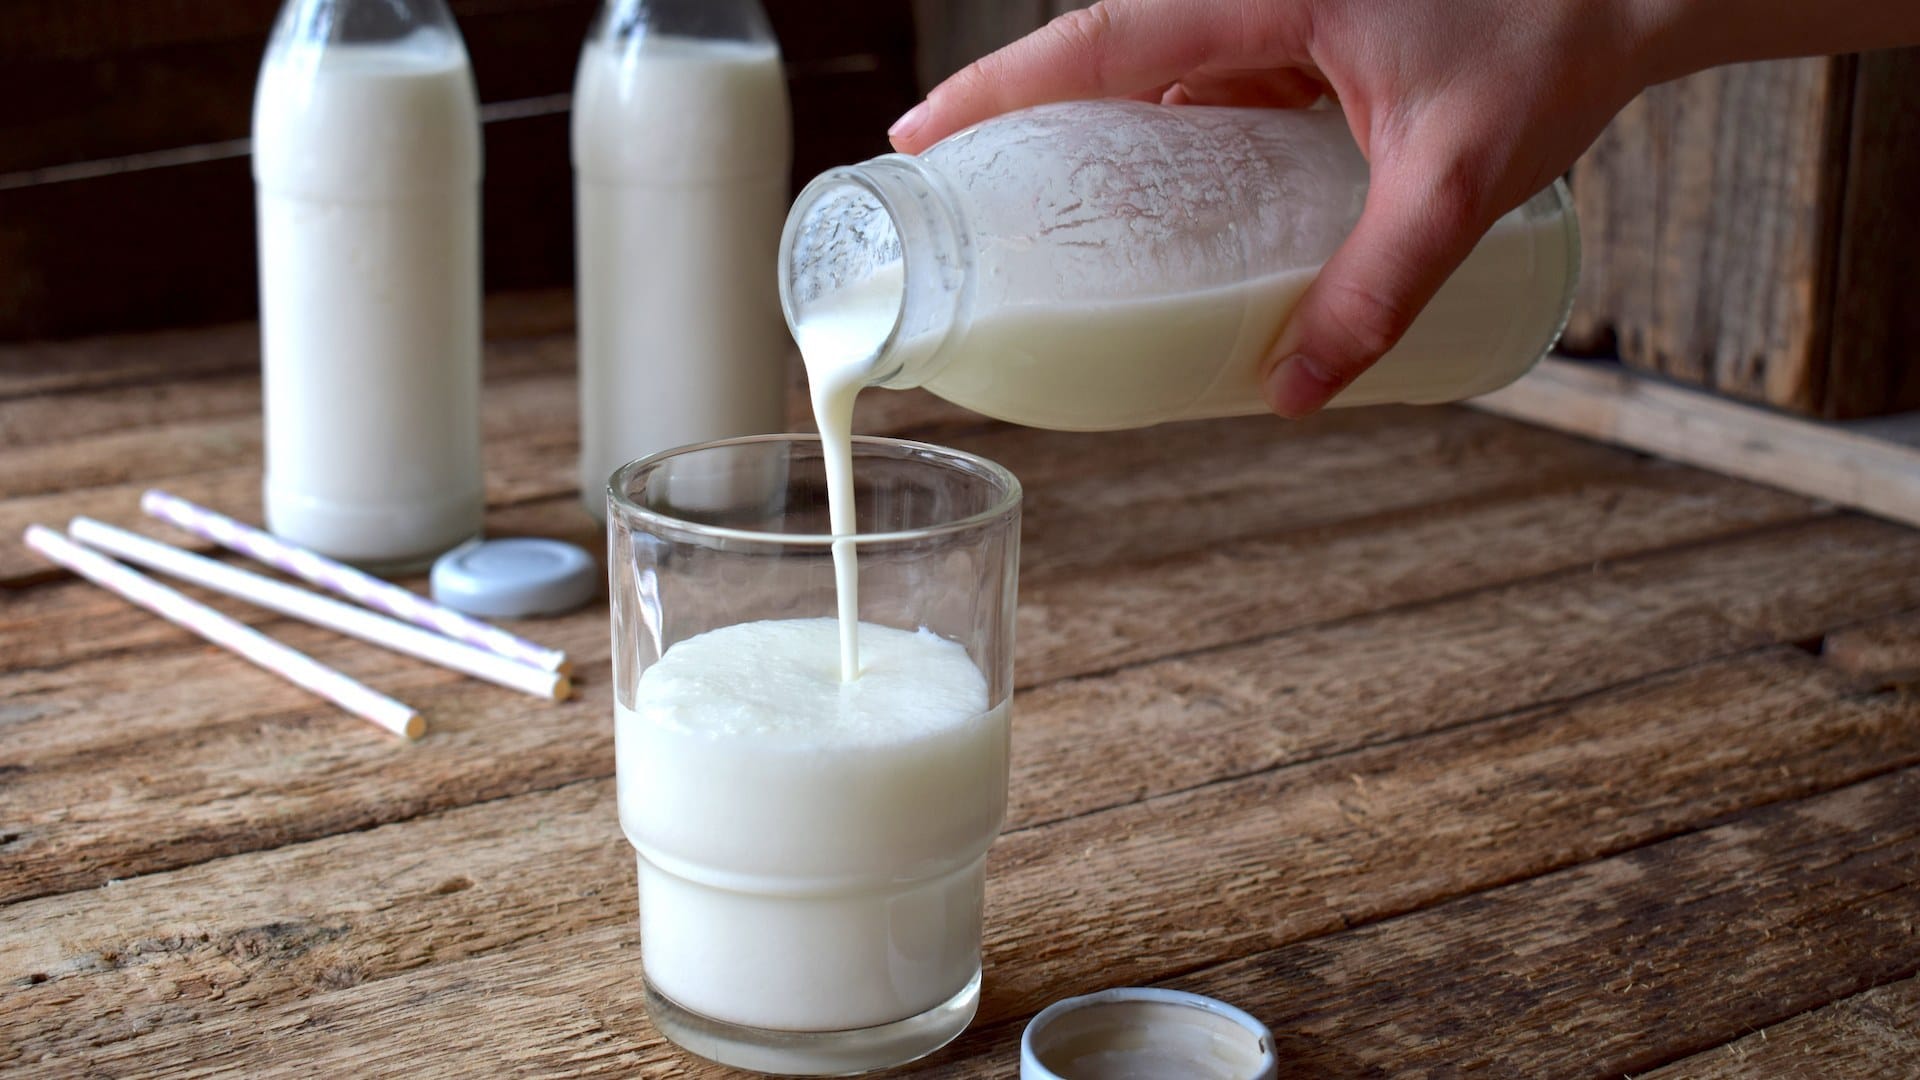 أيهما الأفضل لصحتك الحليب البارد أو الساخن؟ watanserb.com